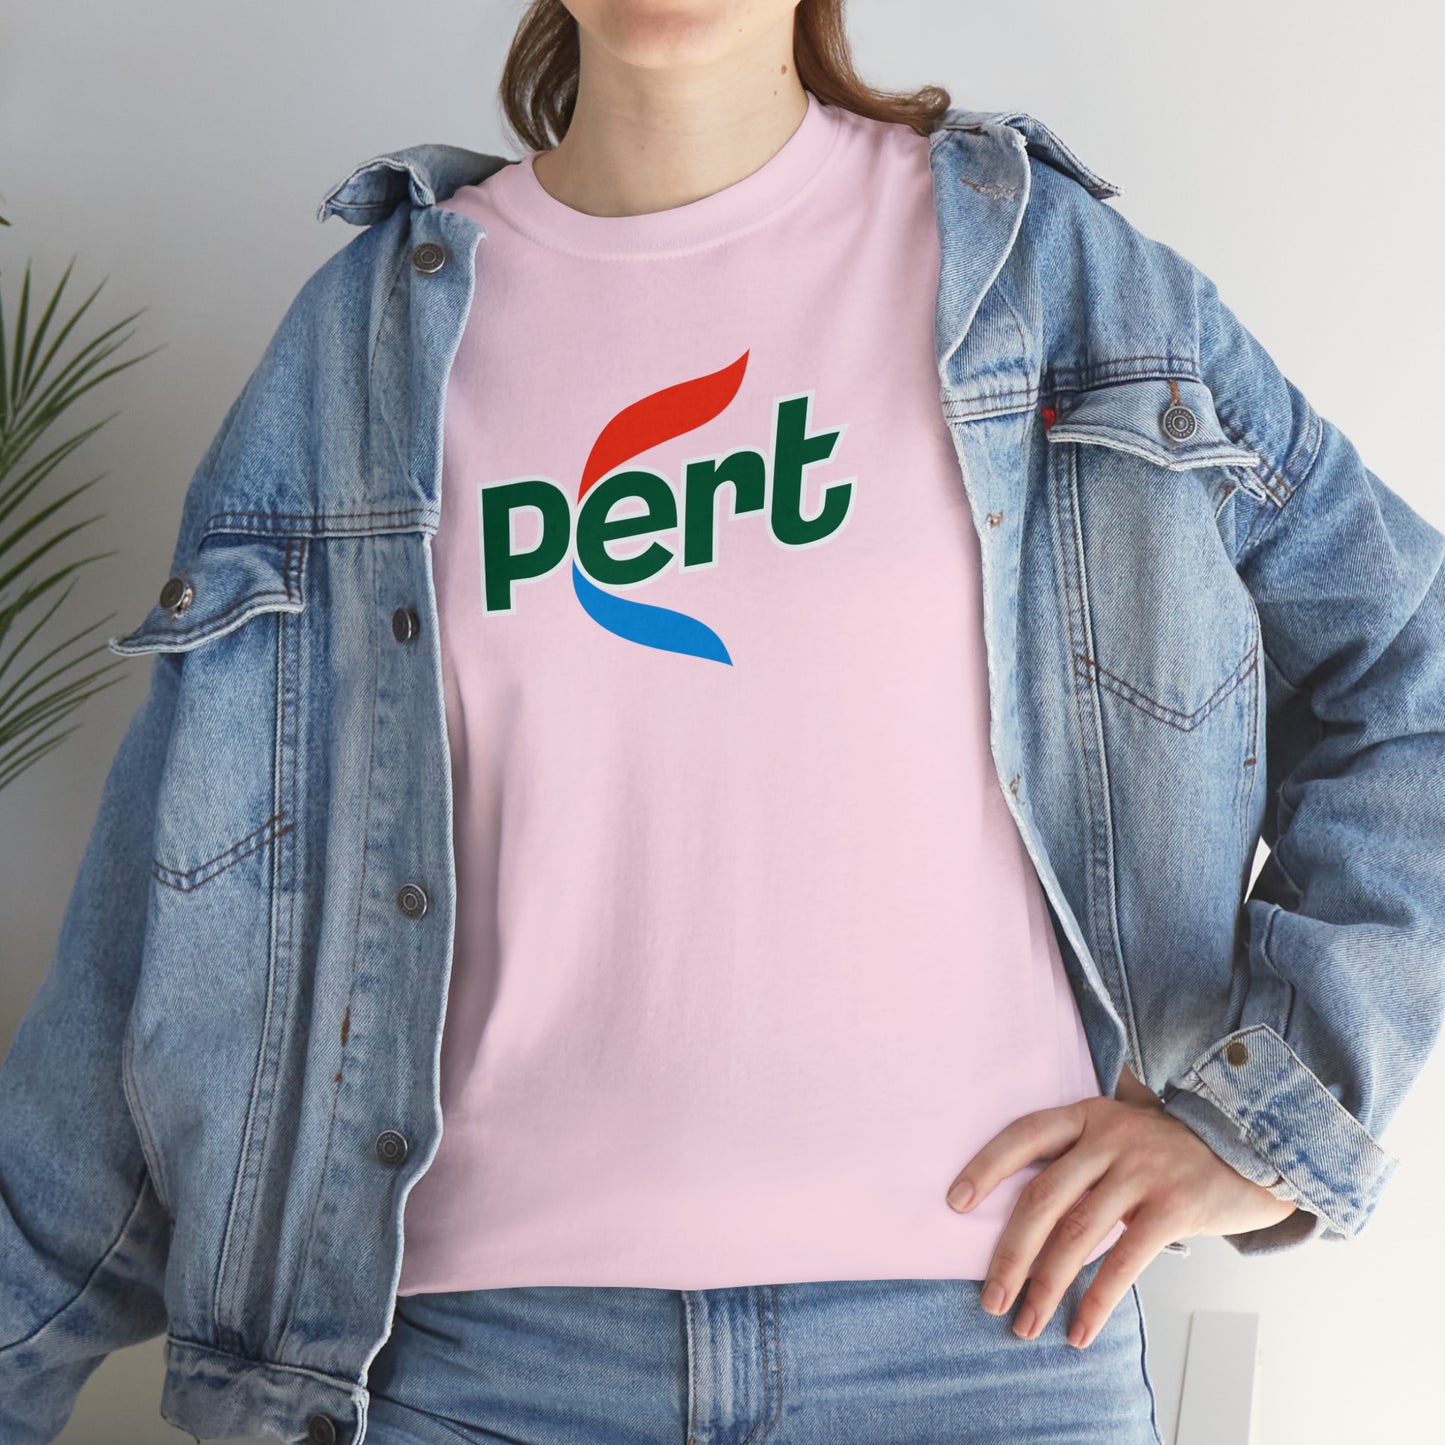 Pert T-Shirt